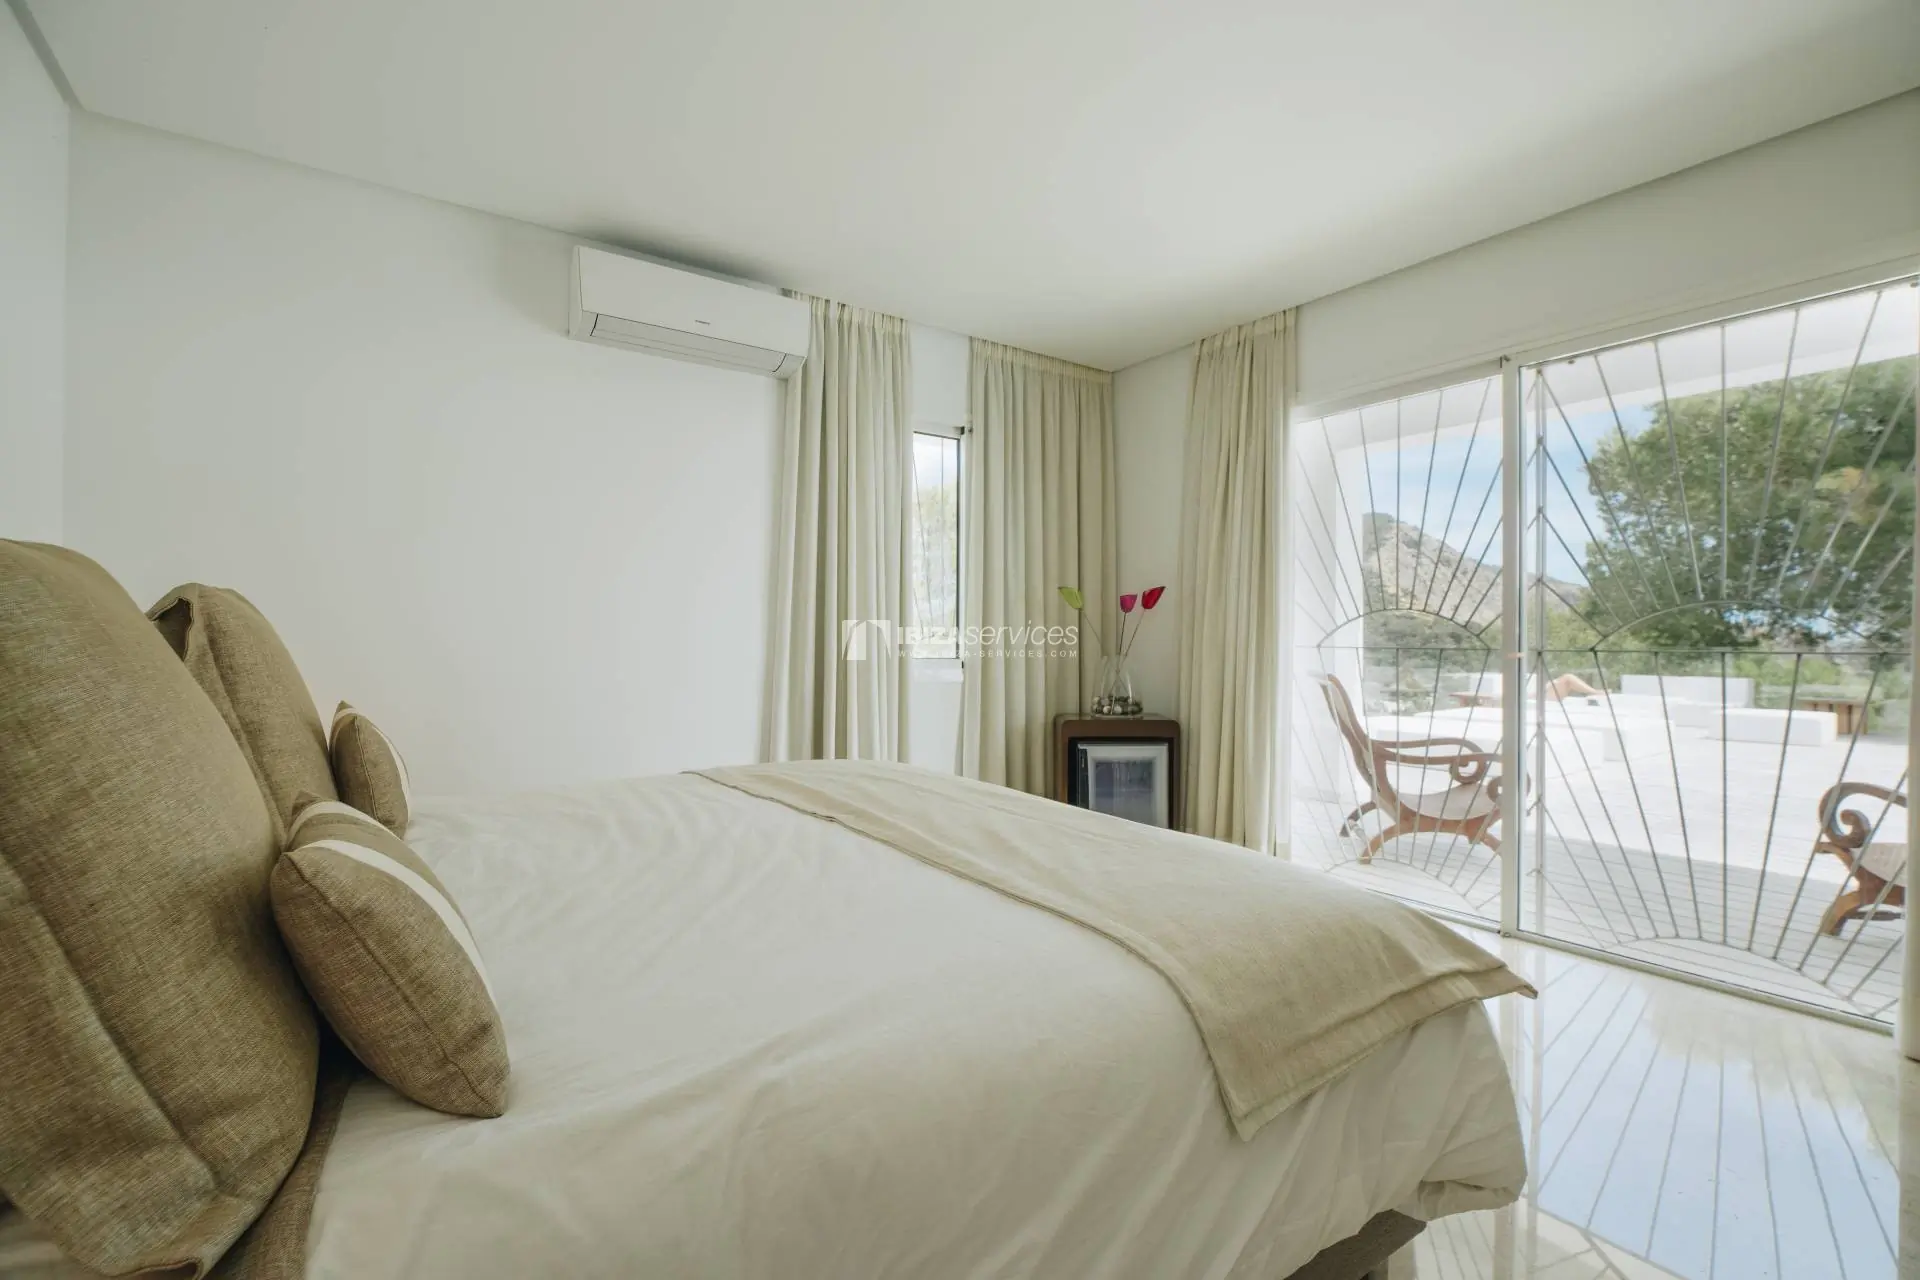 Cala Jondal maison moderne de 4 chambres location de vacance Ibiza